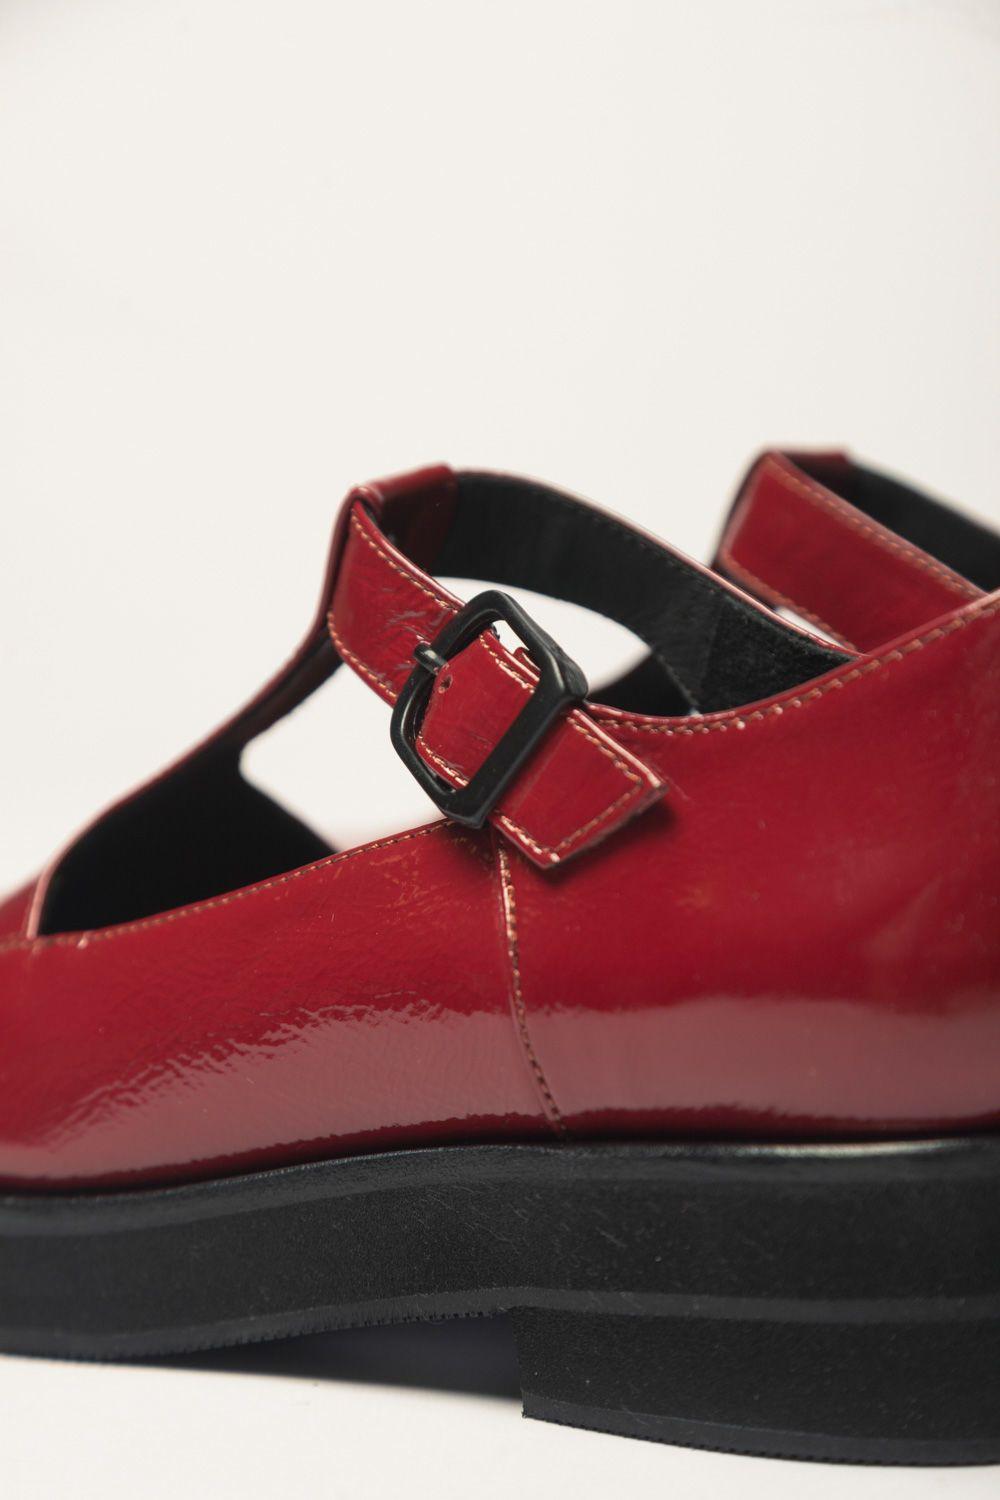 Zapato Guillermina Rojo 38